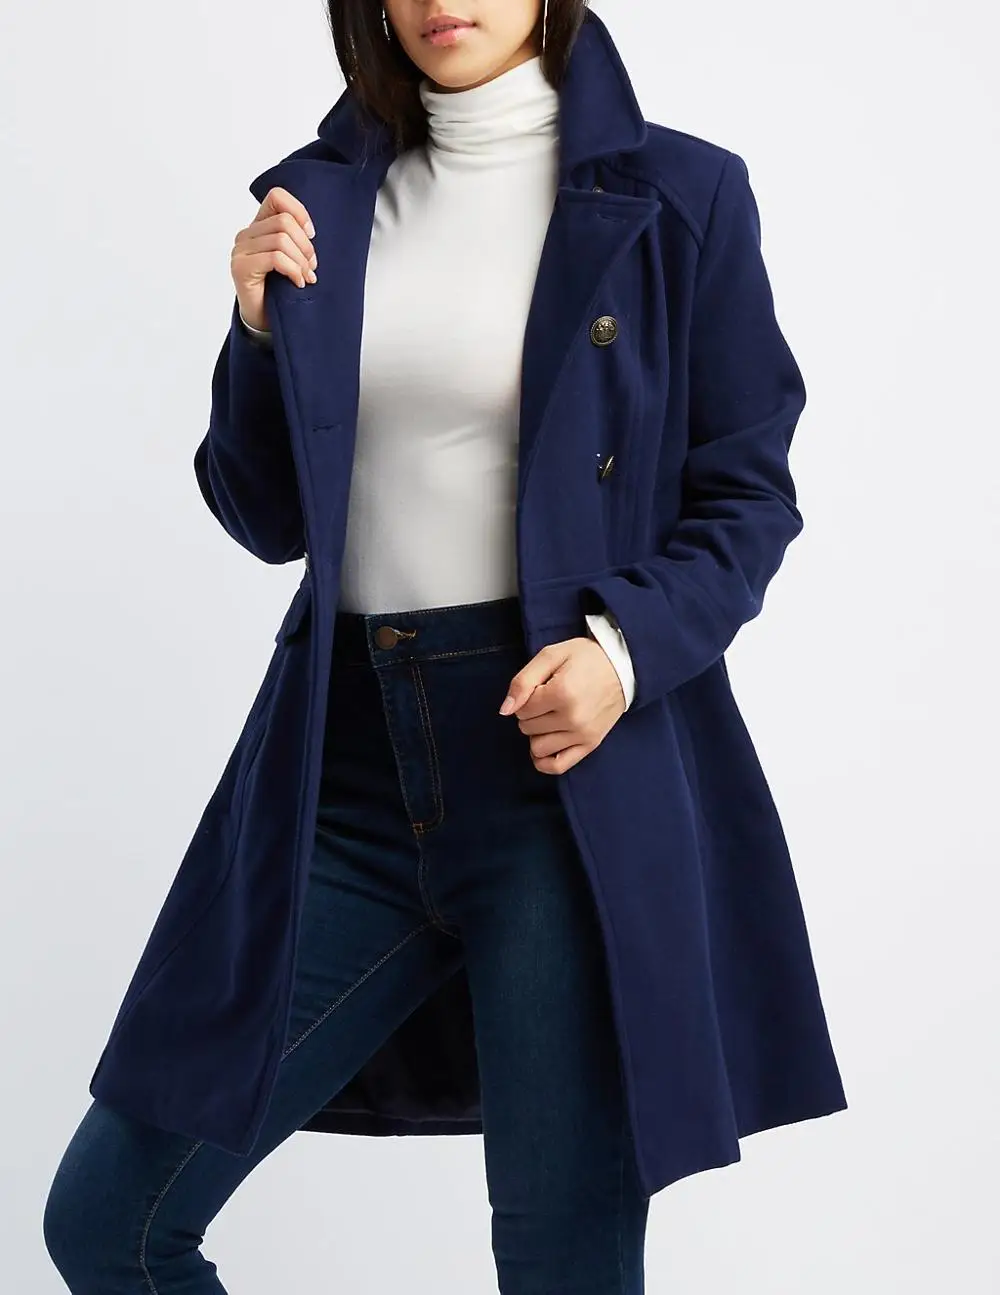 Cheap Royal Blue Coat Pant Cotton Woman Blazers Photos Price Images ...